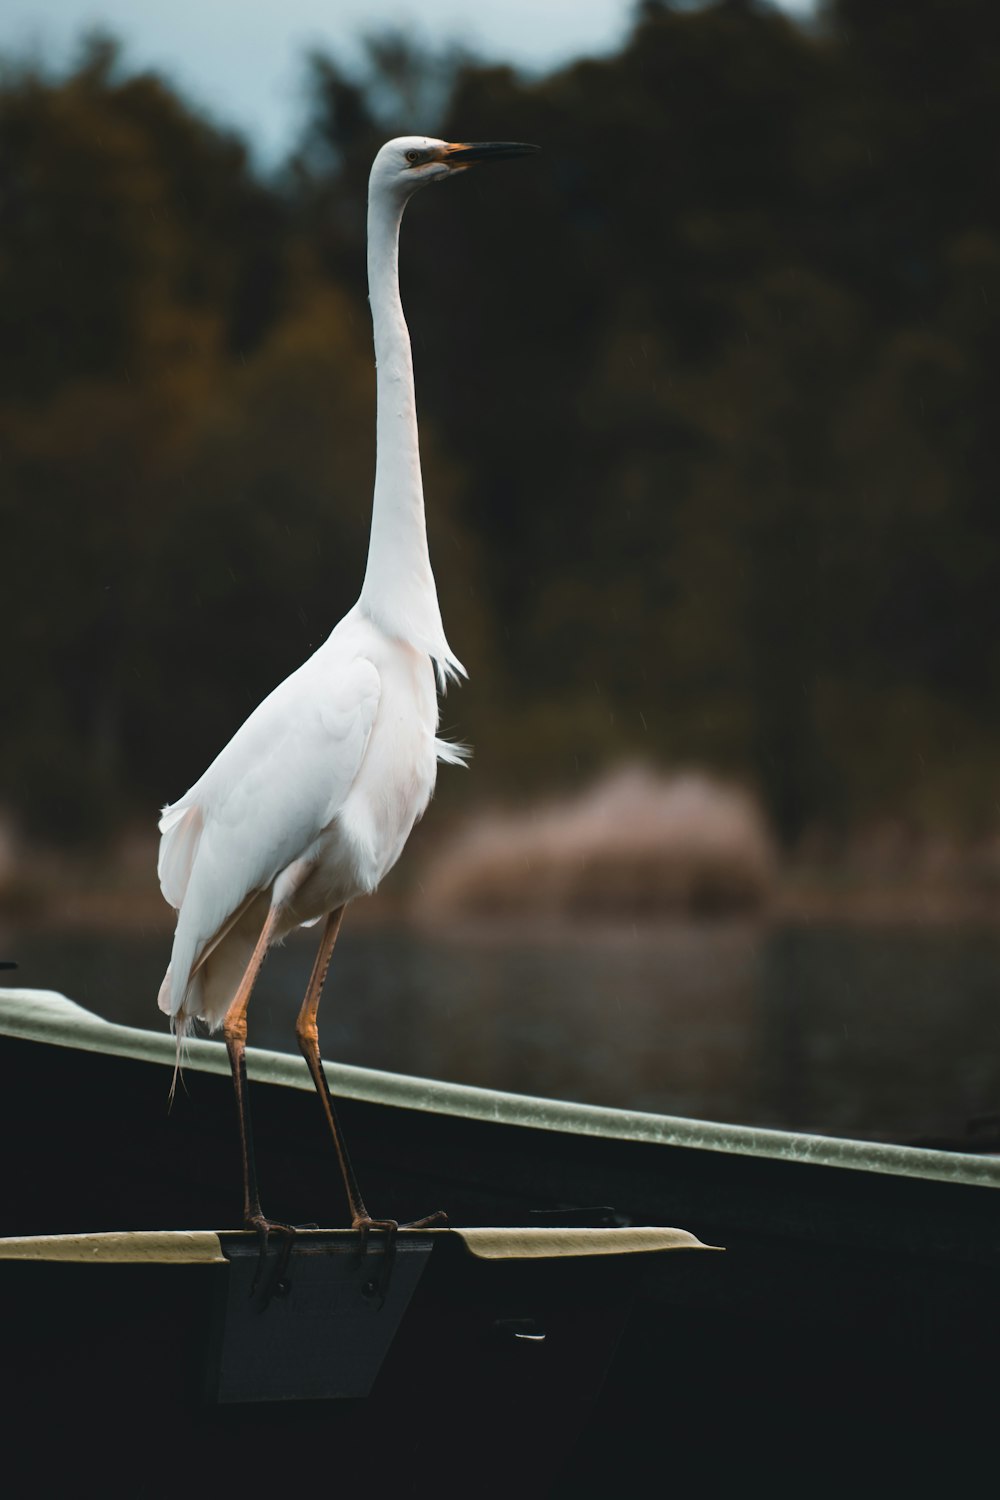 Un oiseau blanc se tient sur le bord d’un bateau